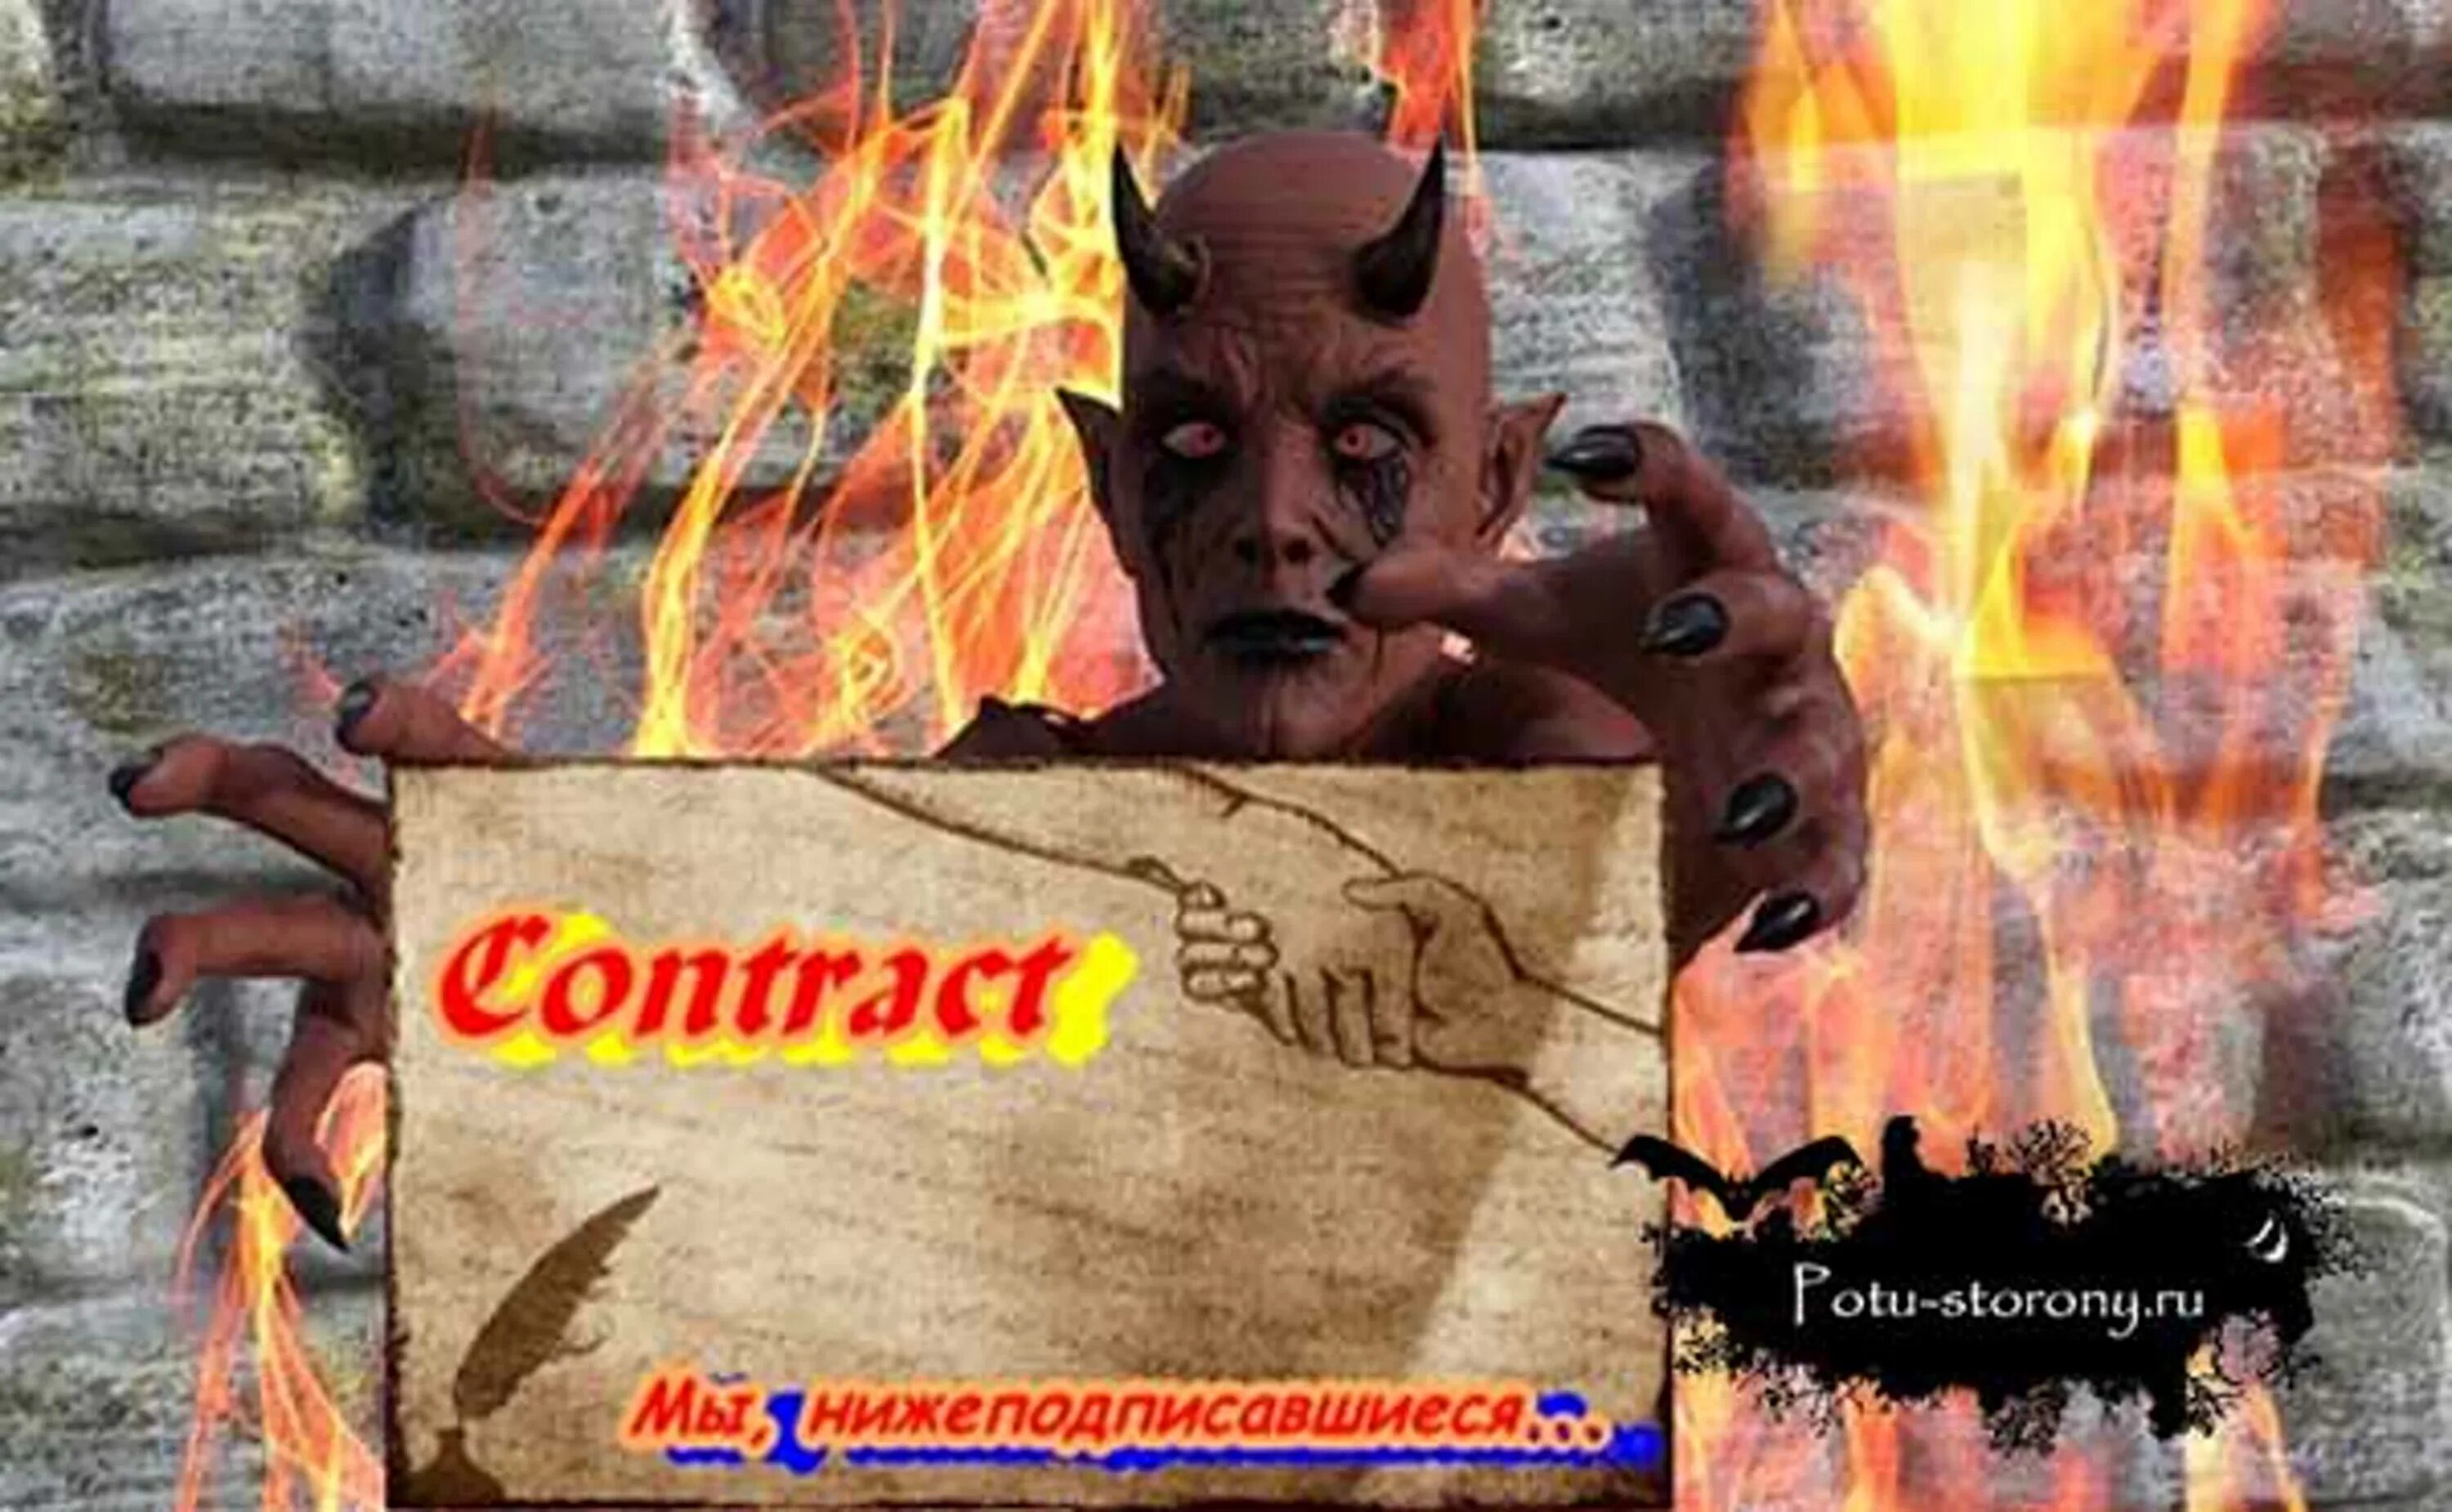 Общение с дьяволом. Контракт с дьяволом. Договор с дьяволом. Дьявольский контракт. Про души дьяволу